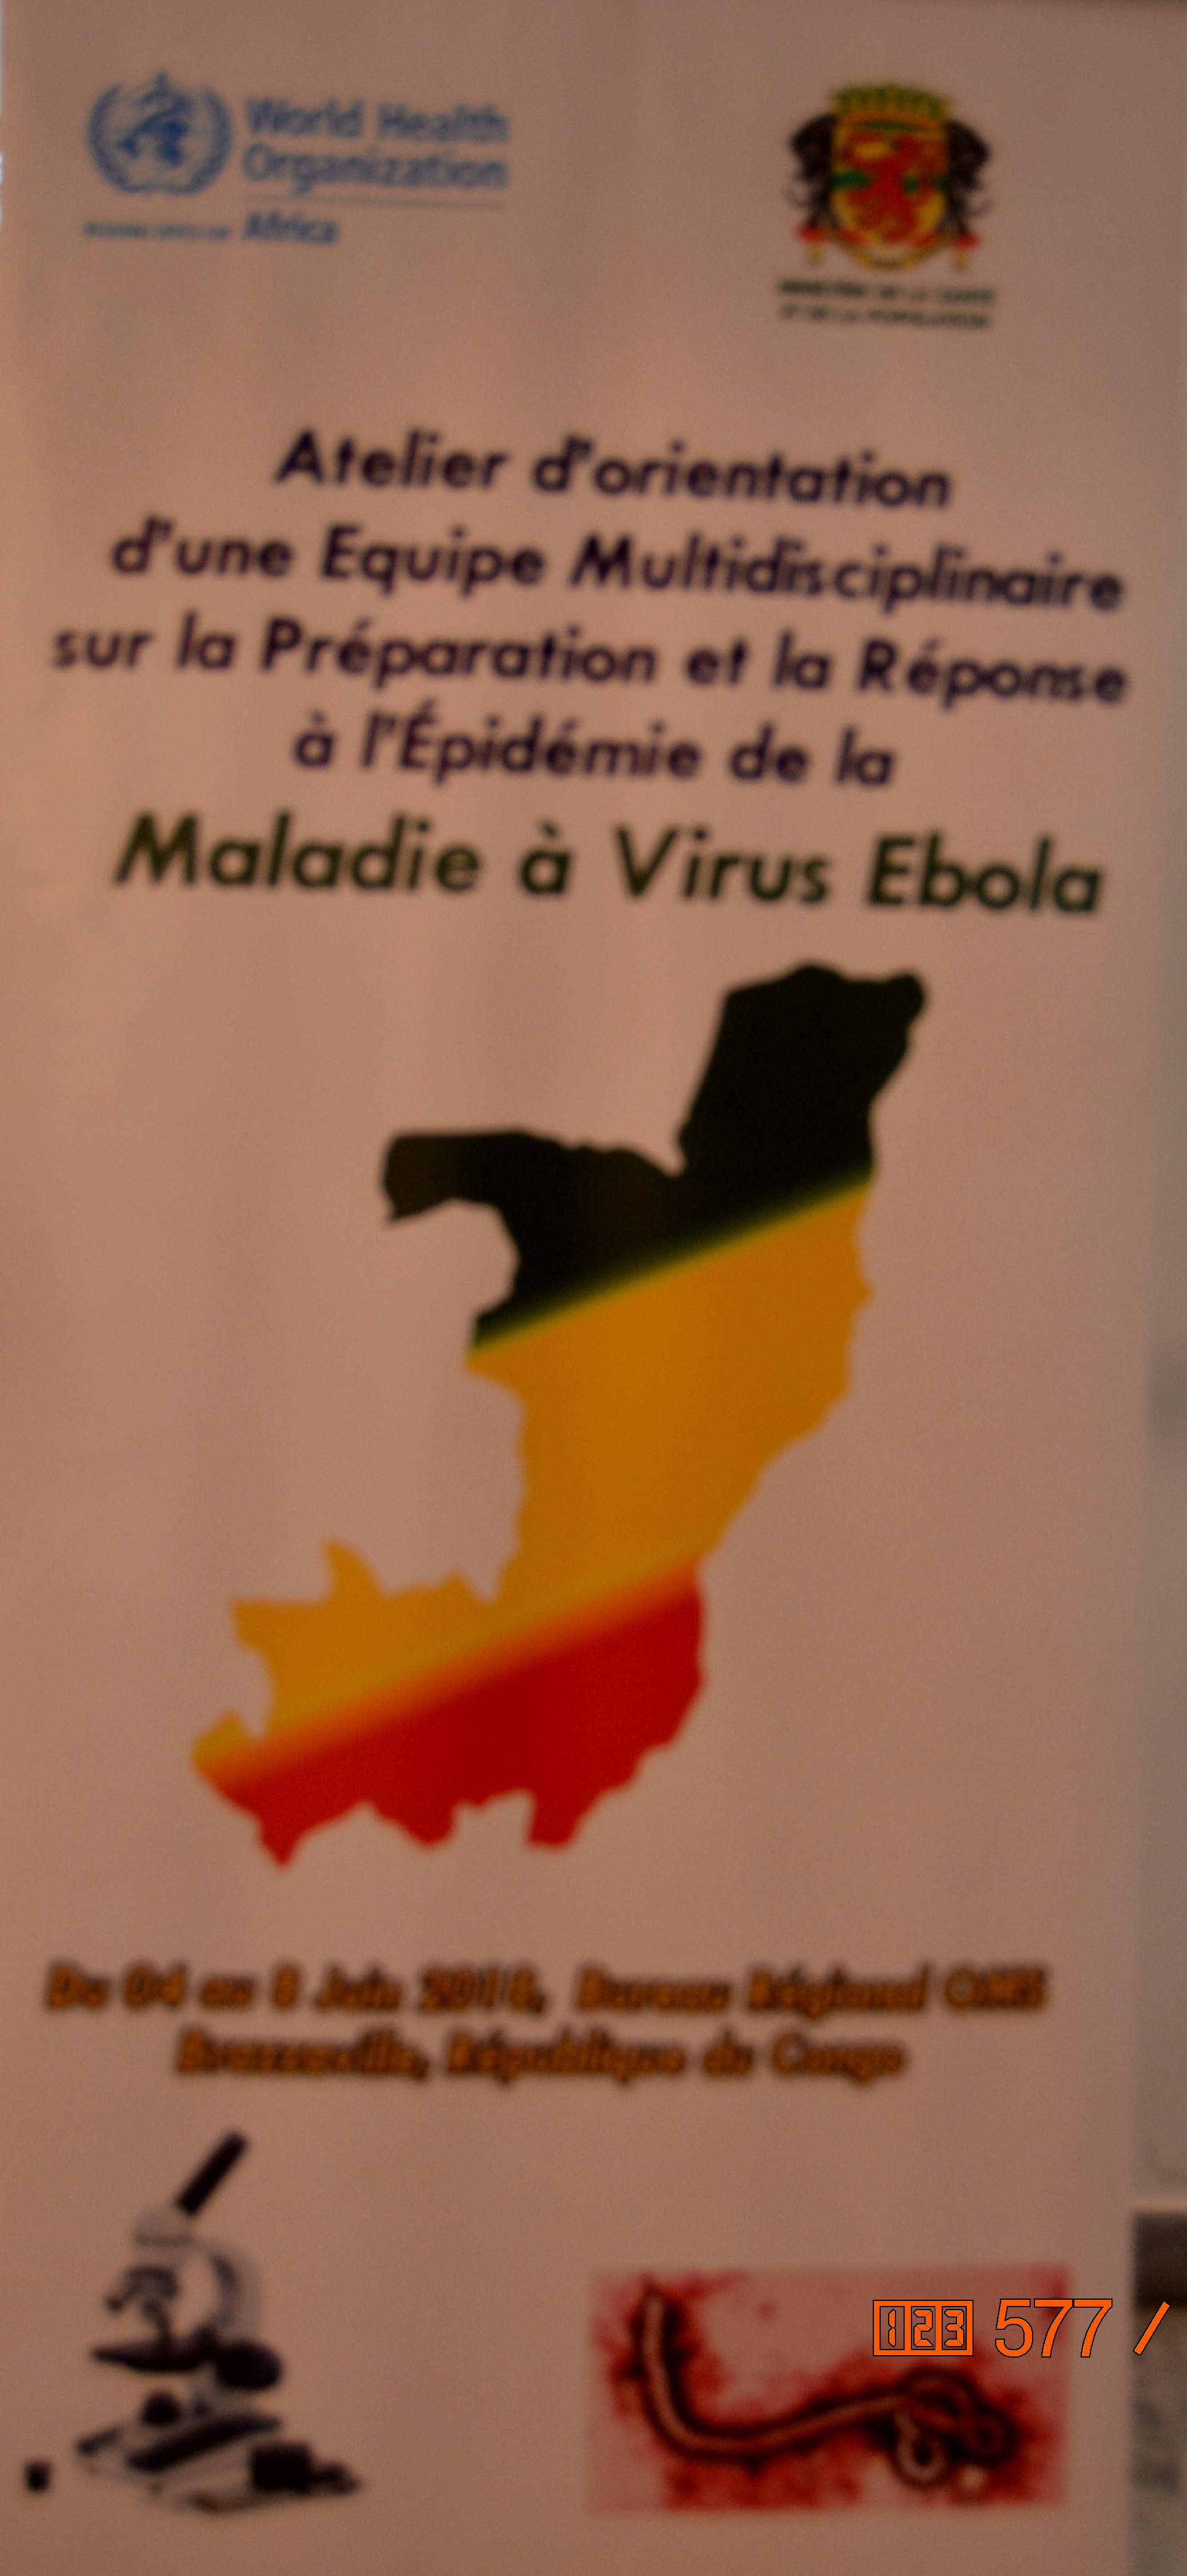 Formation à l’intention des membres de l’équipe multidisciplinaire sur la Préparation et la Réponse à l’épidémie de la Maladie à Virus Ebola